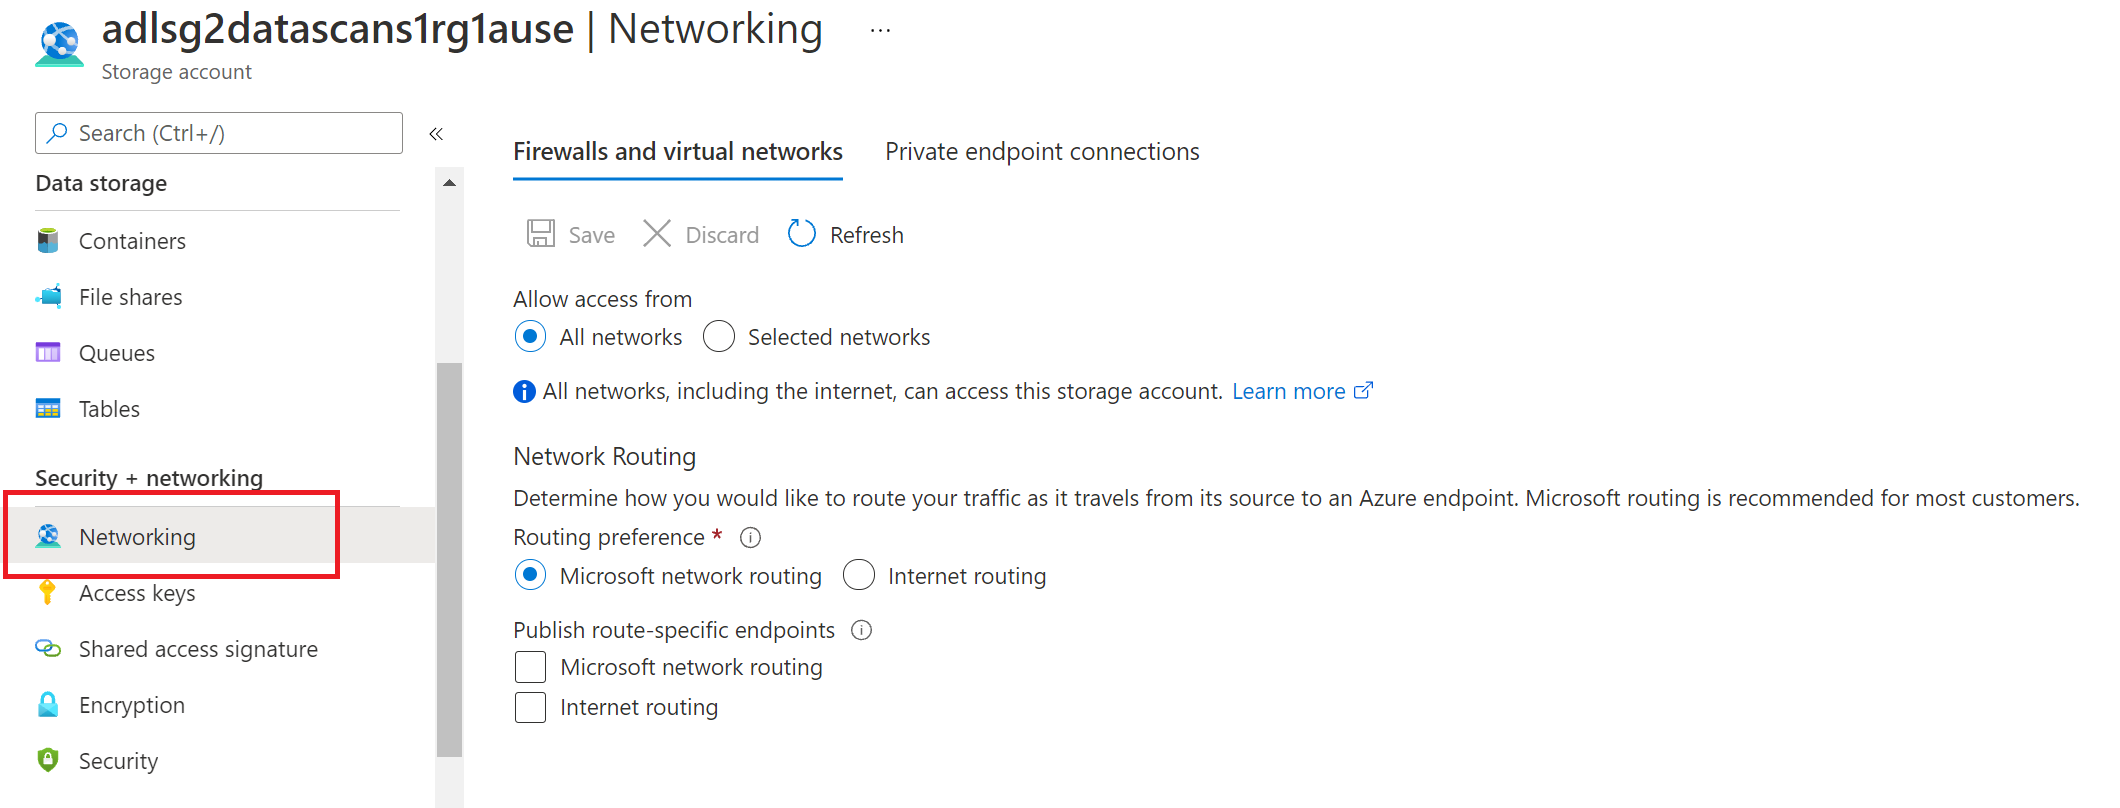 Captura de tela que mostra os detalhes para fornecer acesso ao firewall